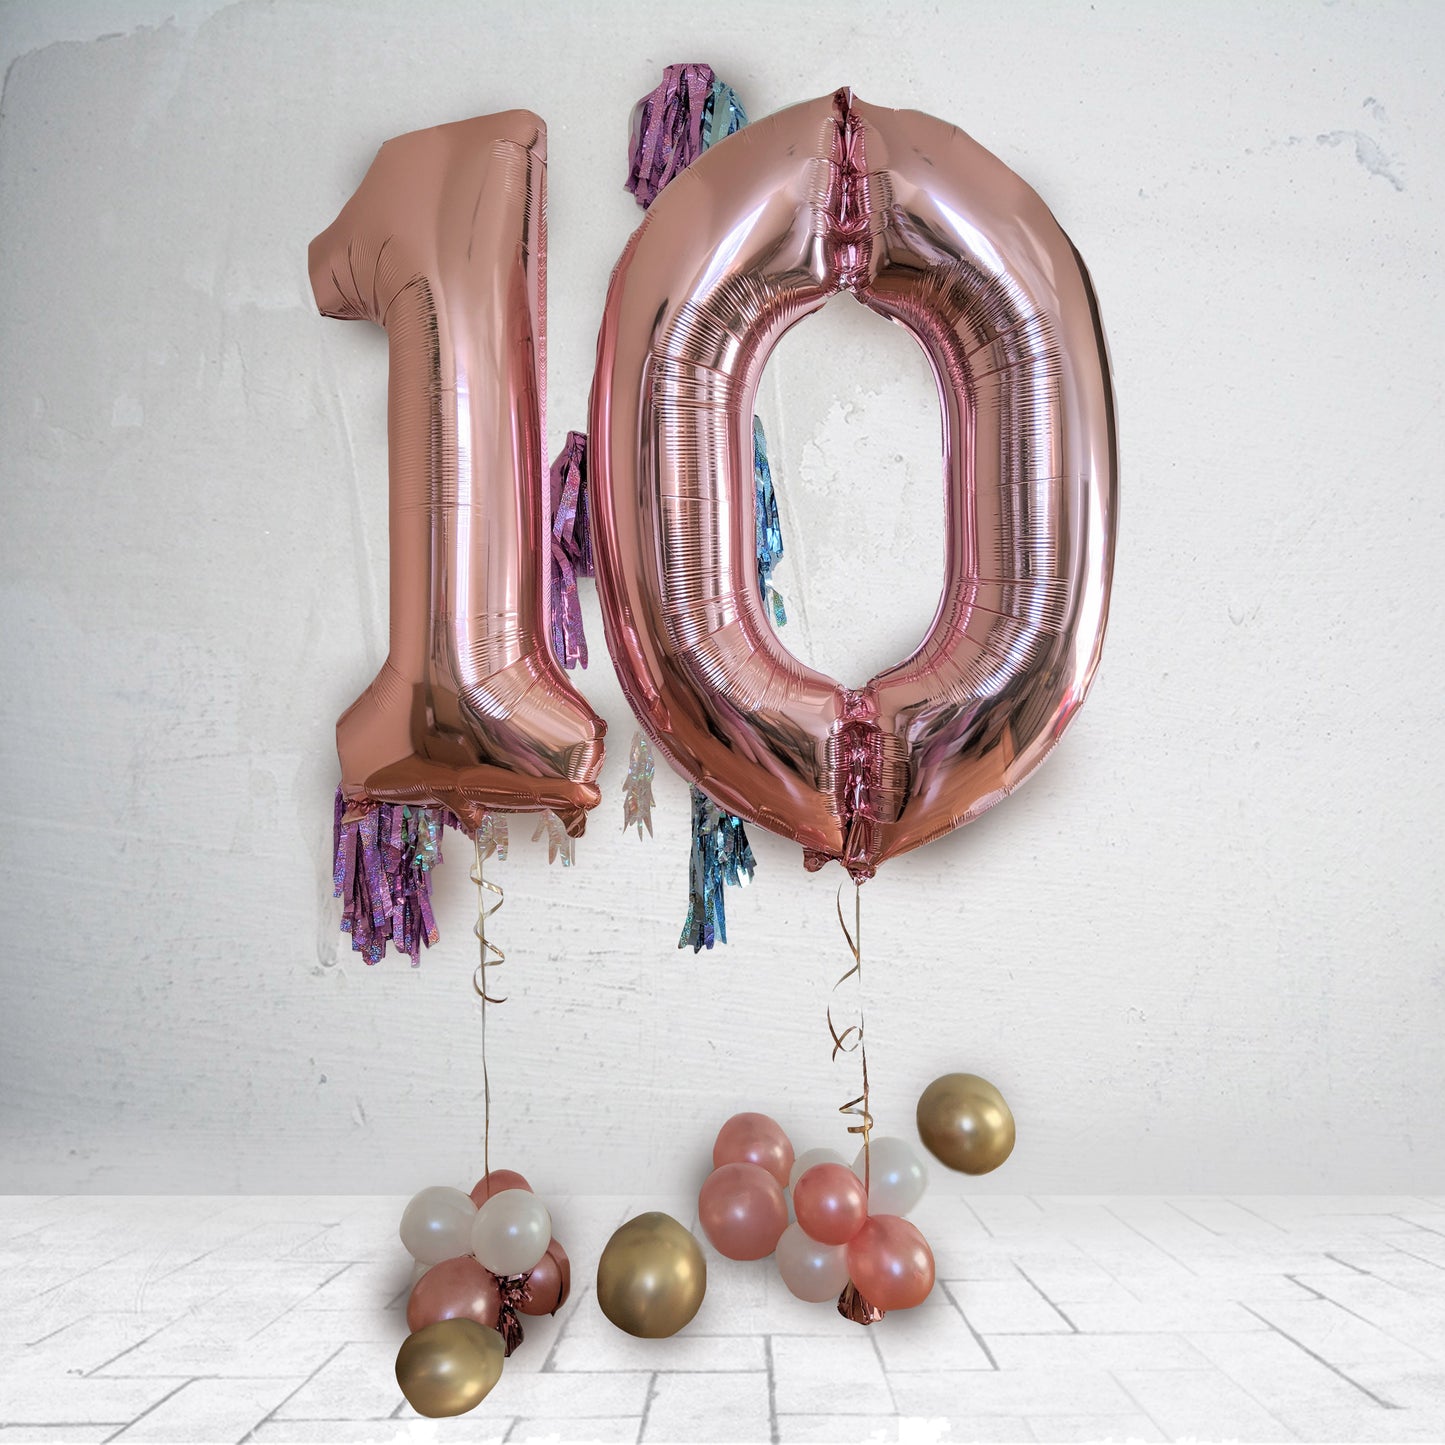 Jumbo numbers double digit birthday balloons